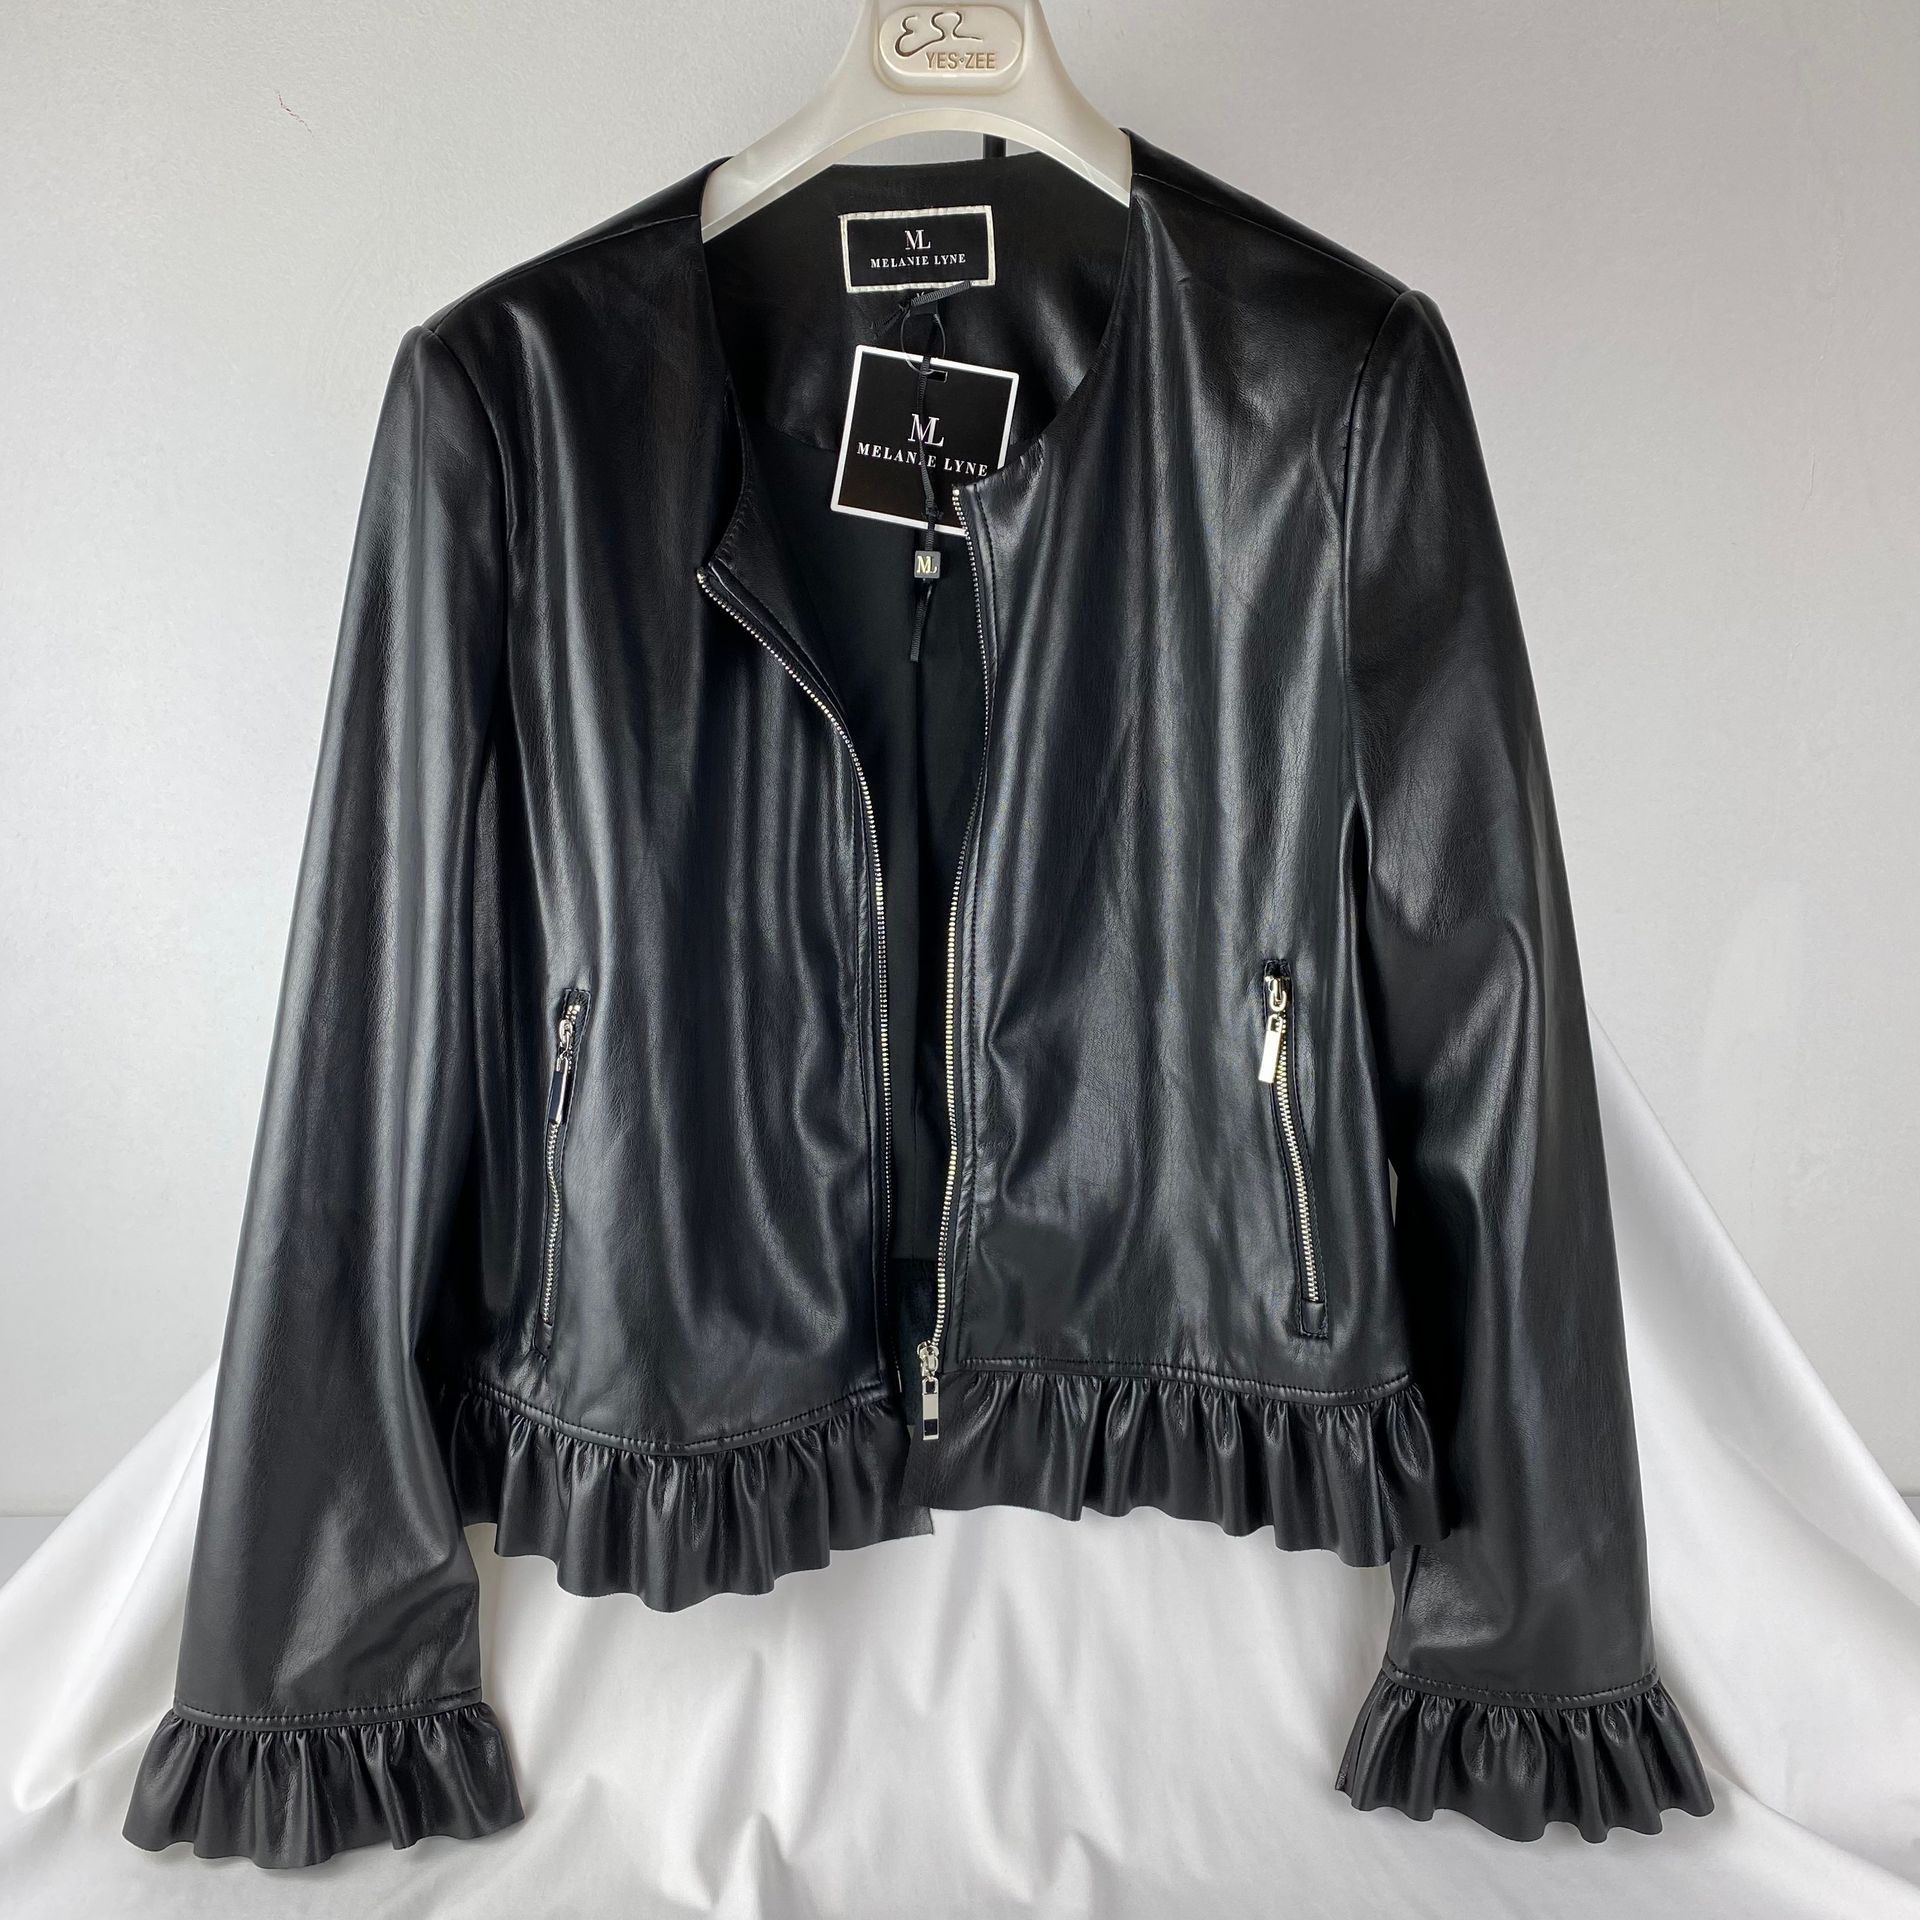 MELANIE LYNE 黑色人造革夹克MELANIE LYNE 尺寸14年。拉链固定。郁金香的袖子。新的，有标签的